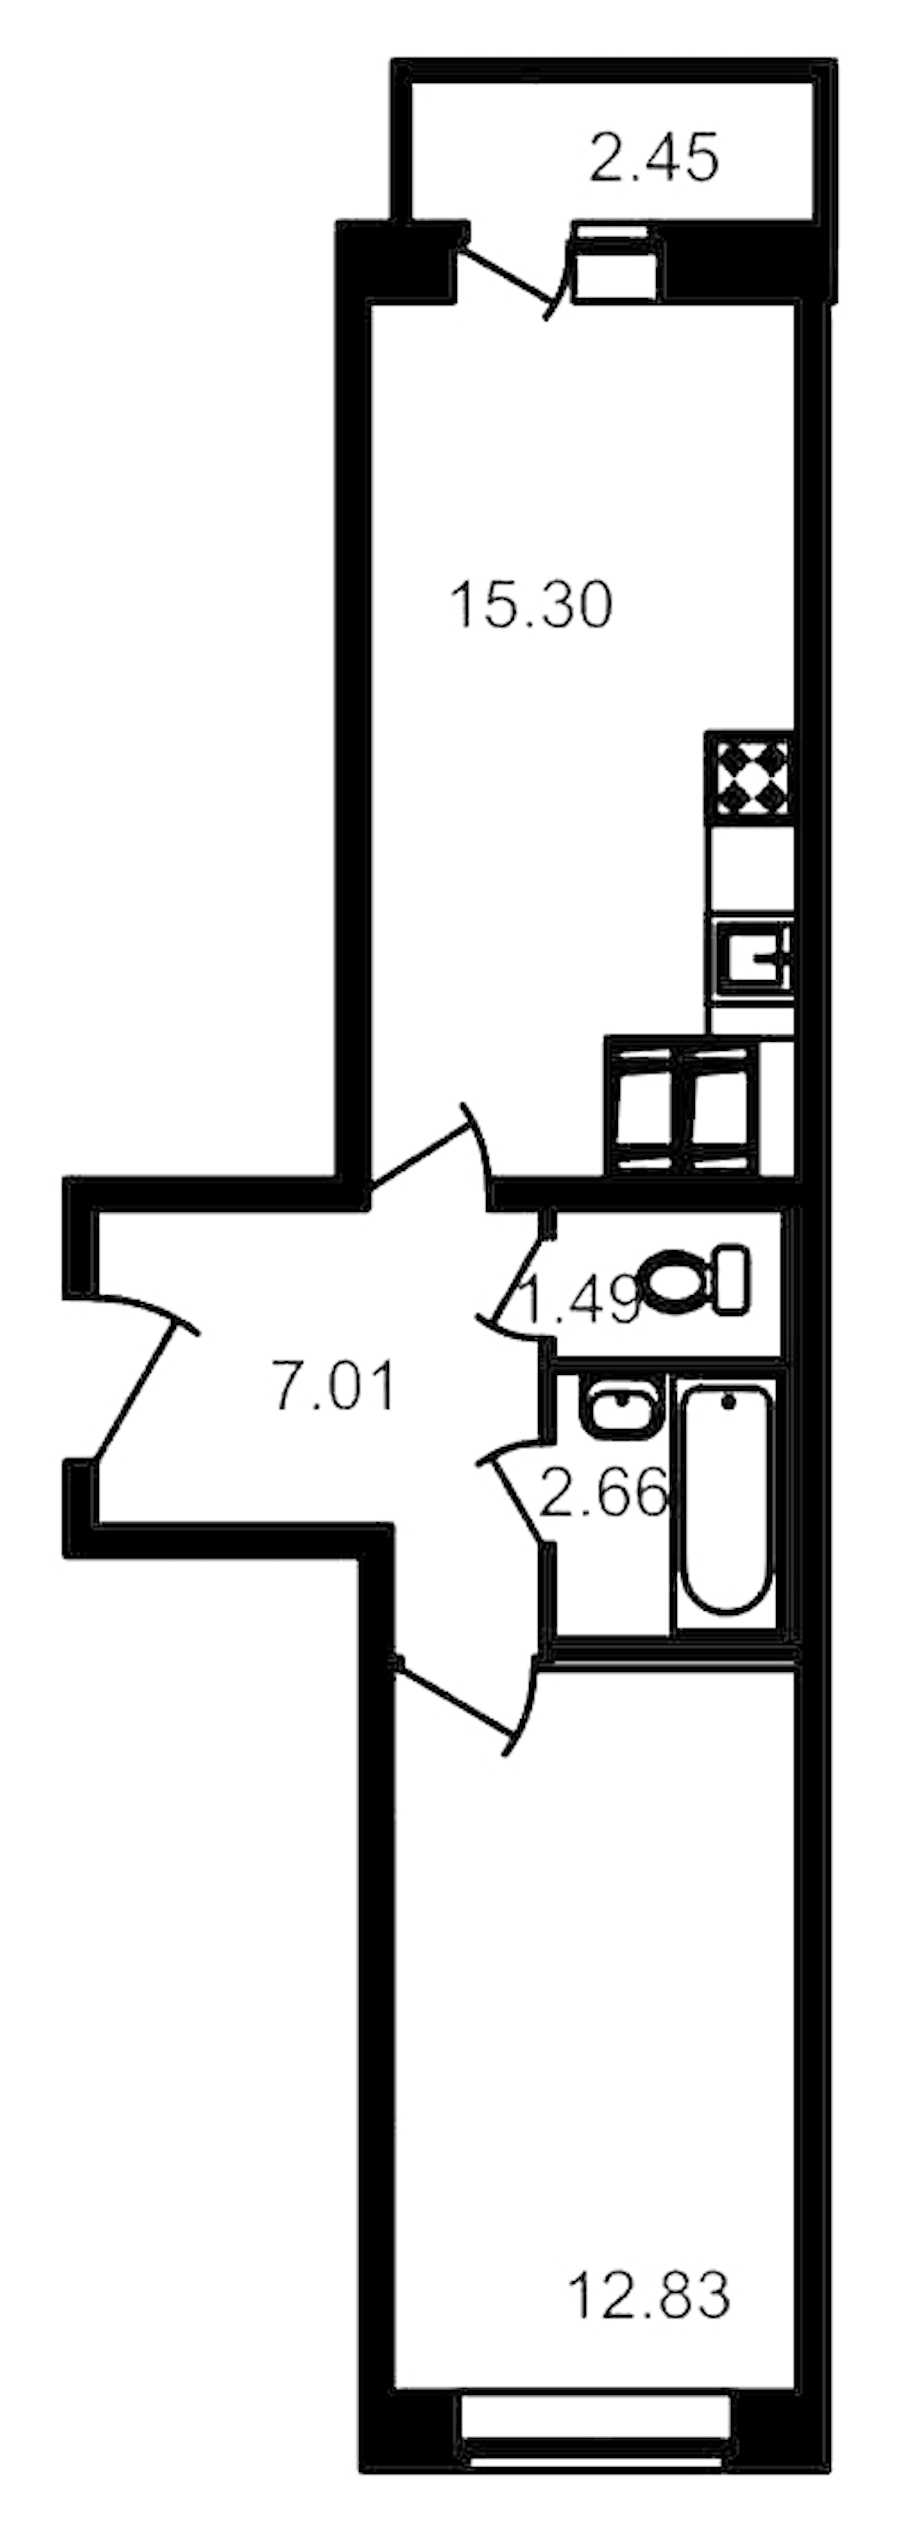 Однокомнатная квартира в ЦДС: площадь 41.23 м2 , этаж: 19 – купить в Санкт-Петербурге